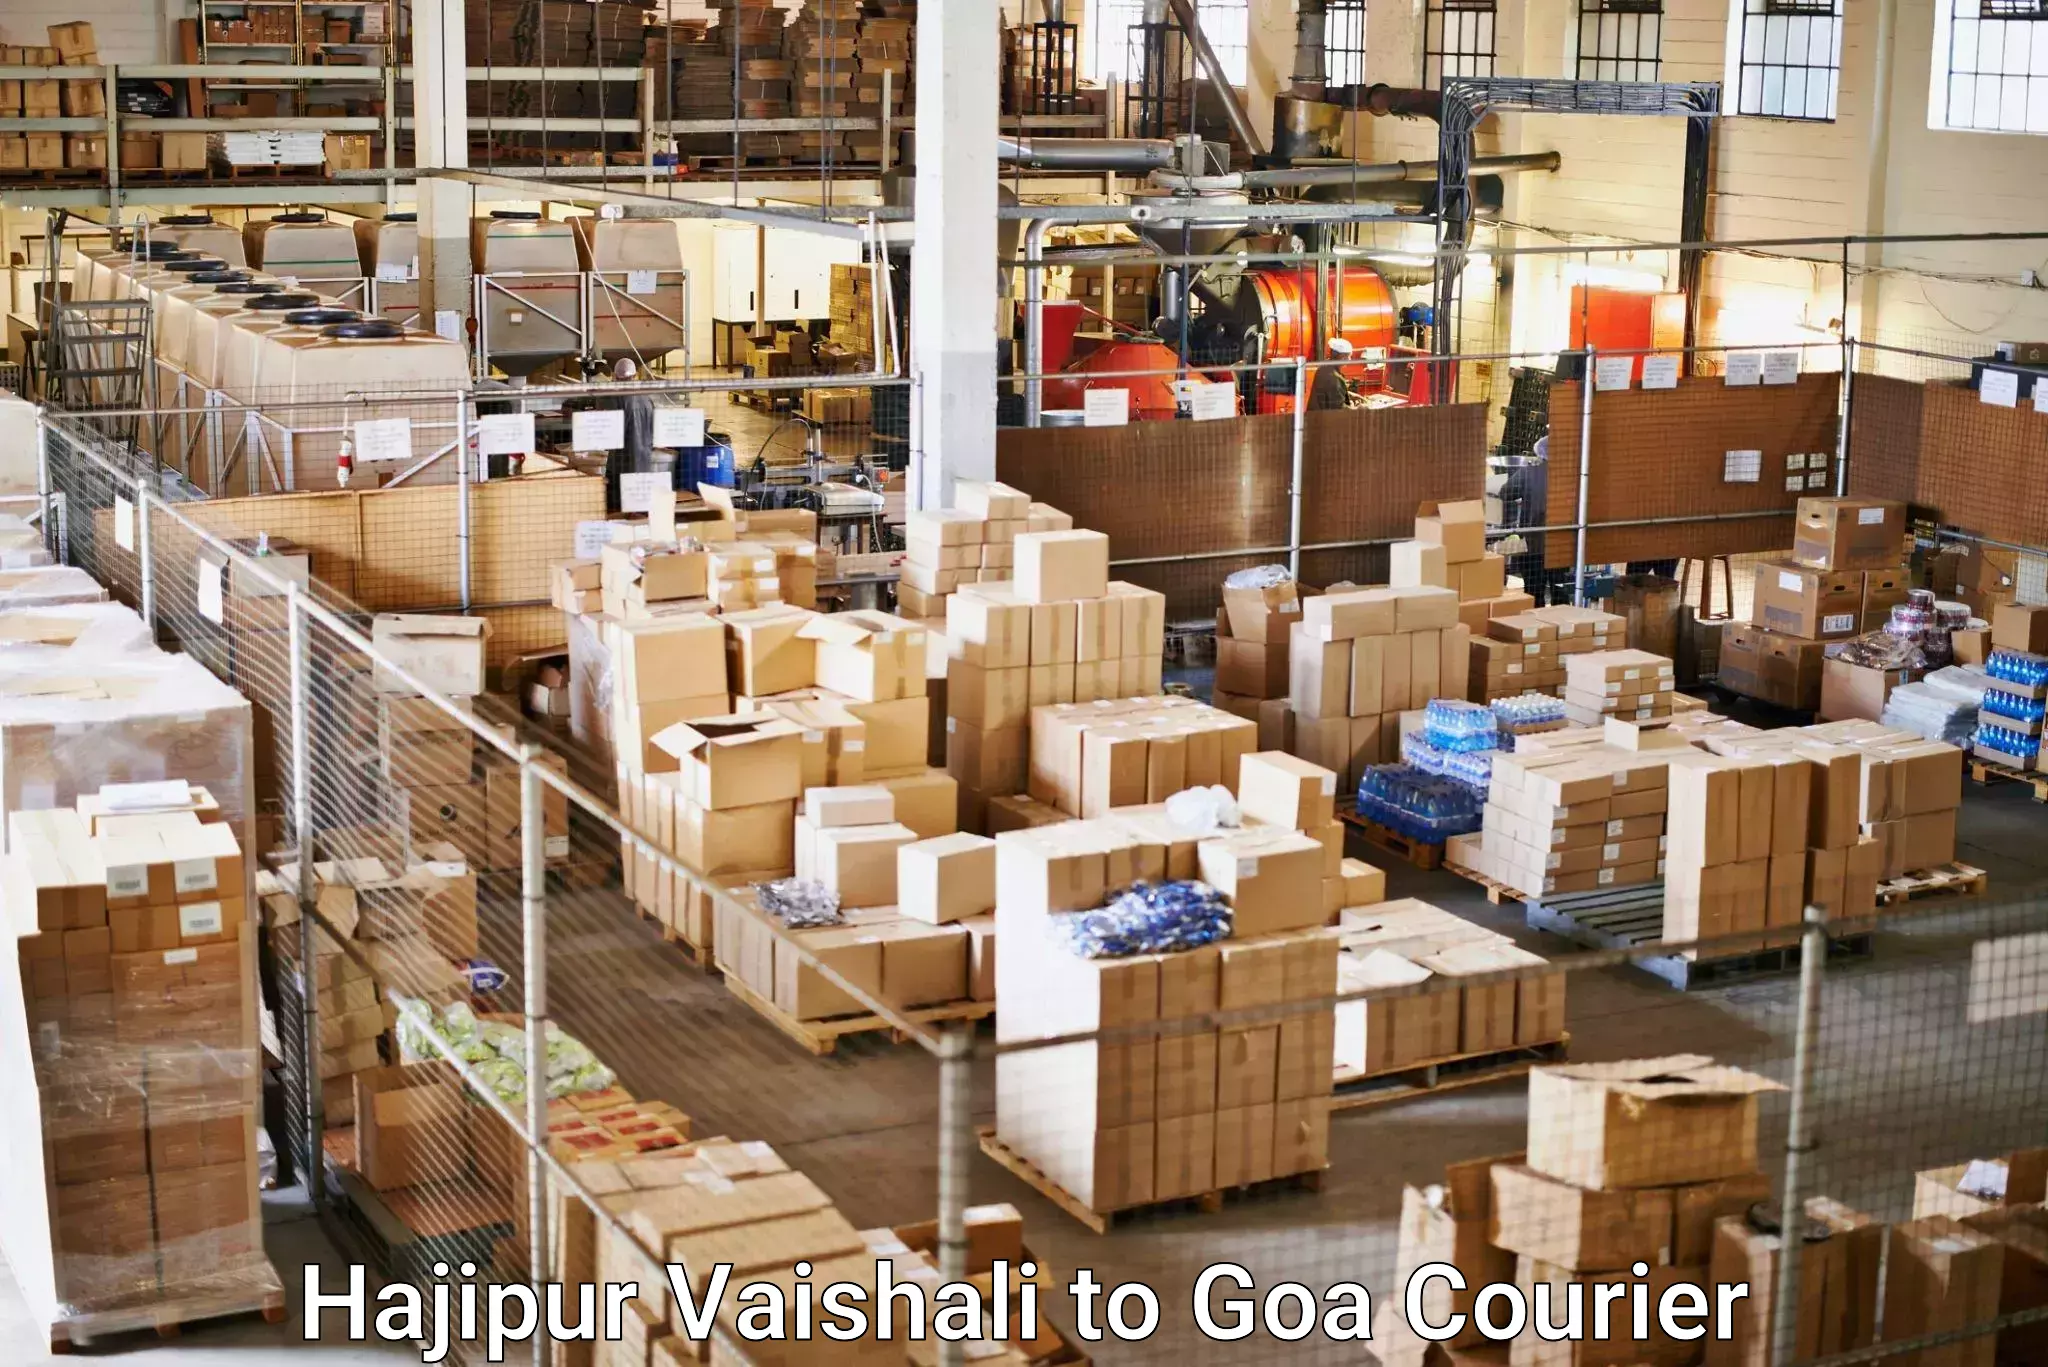 Seamless shipping experience in Hajipur Vaishali to Margao